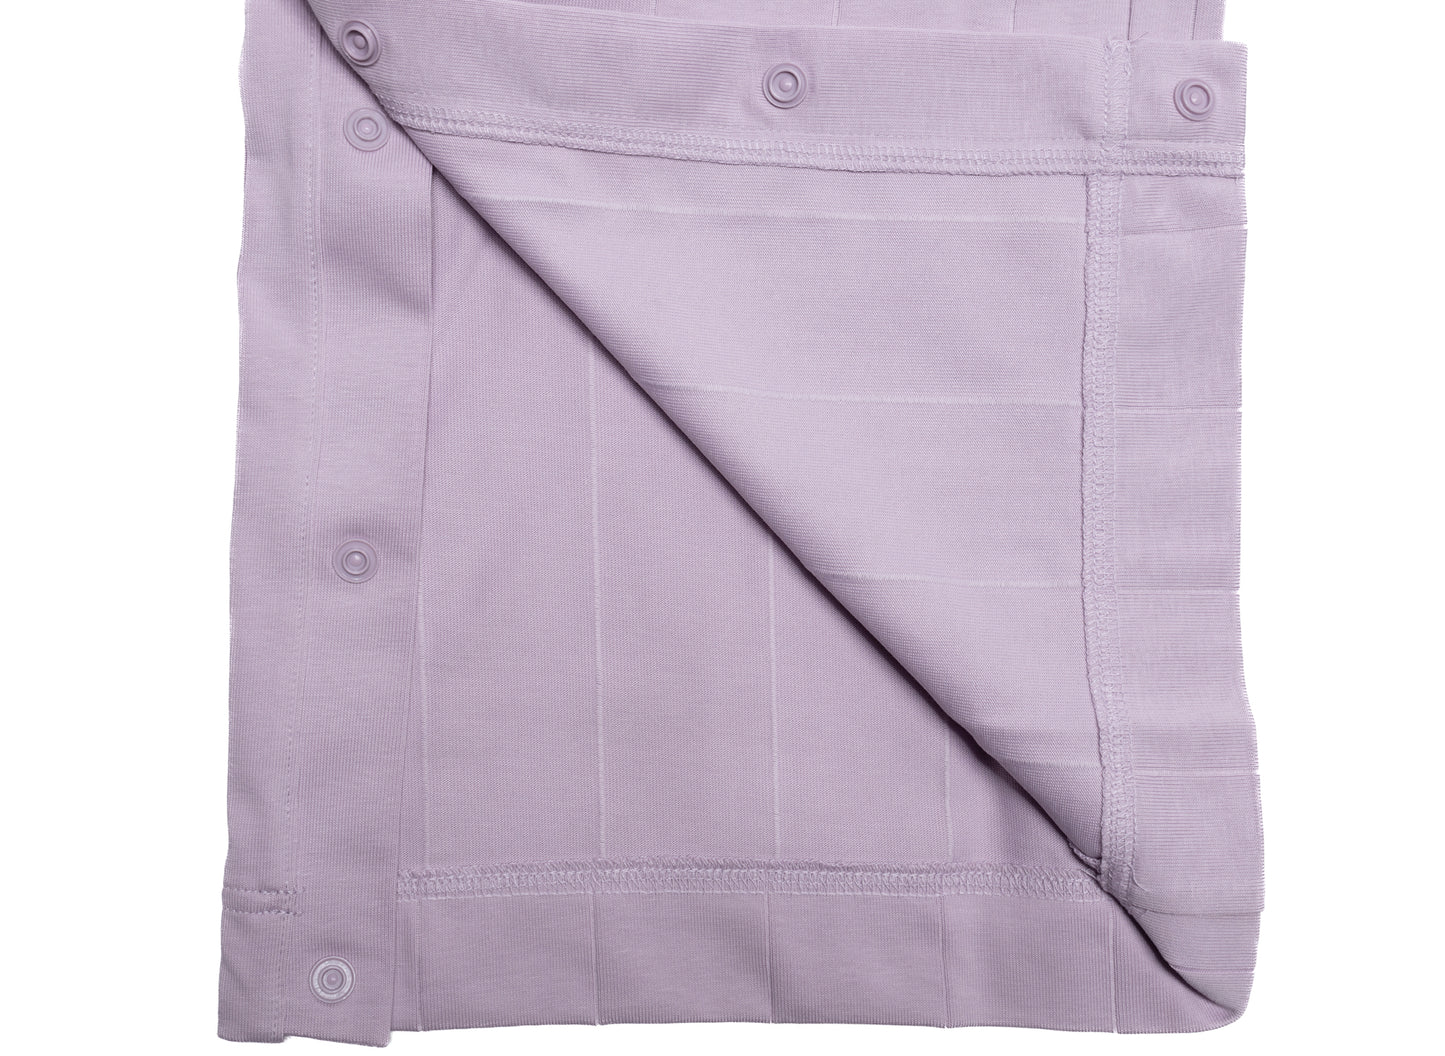 Women's Jordan Knit Pants in Iced Lilac